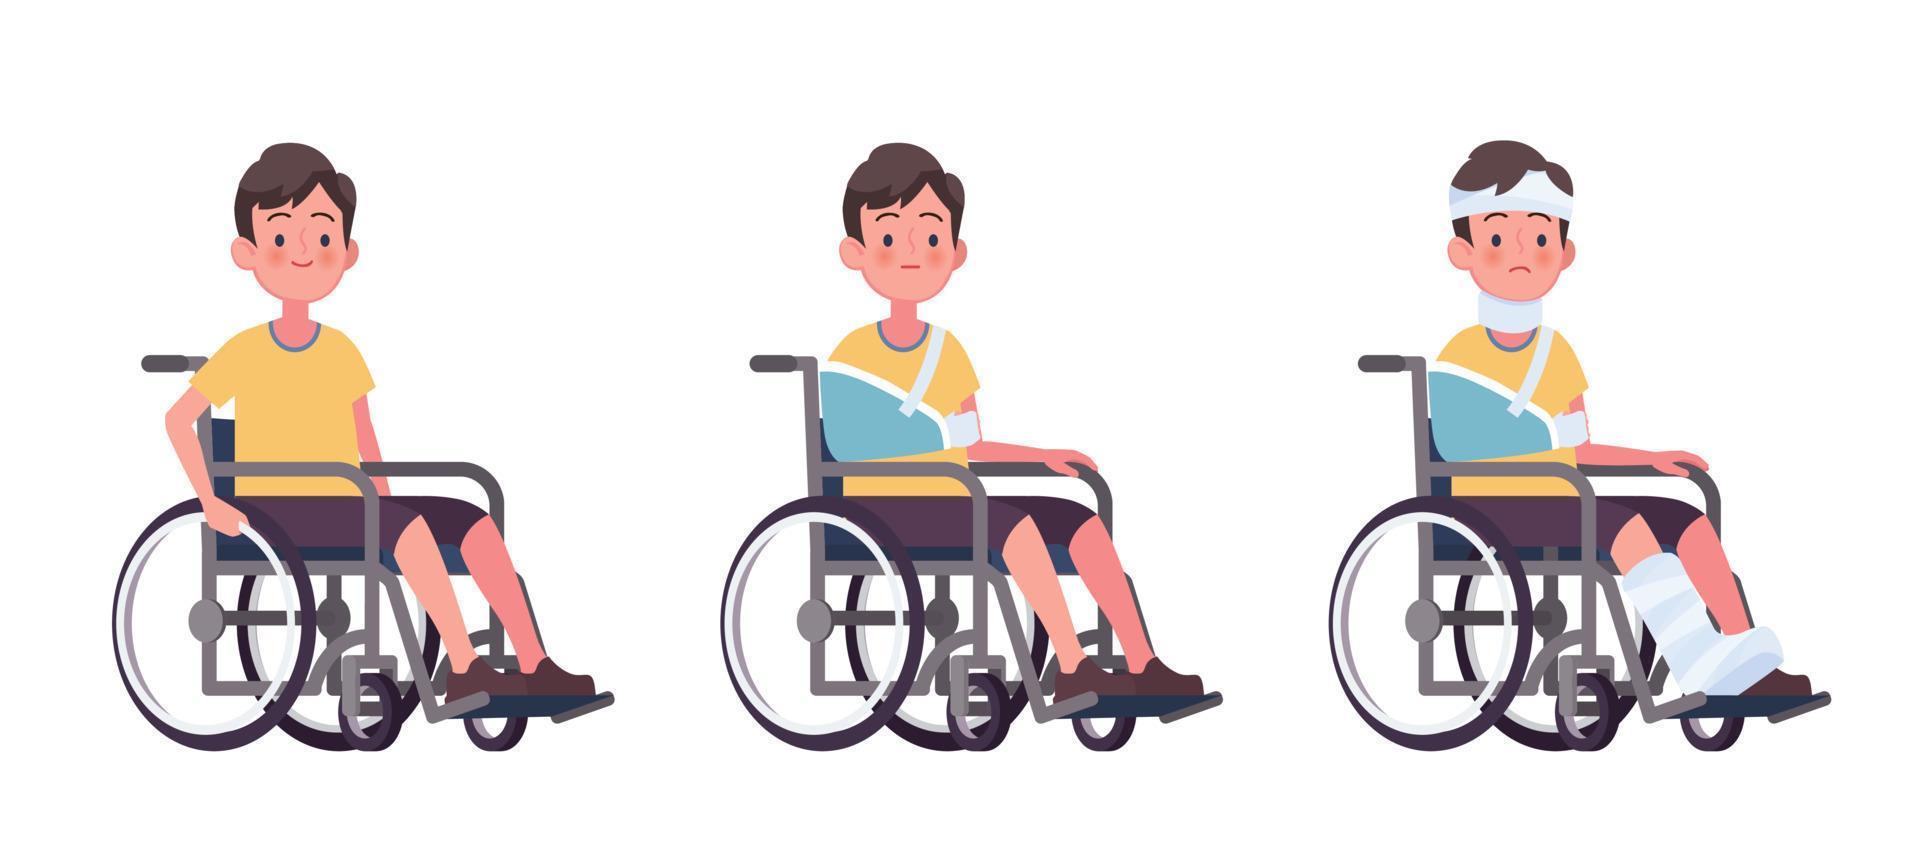 giovane uomo in sedia a rotelle, fumetto illustrazione vettoriale. concetto di infortunio e disabilità, riabilitazione da incidente. vettore